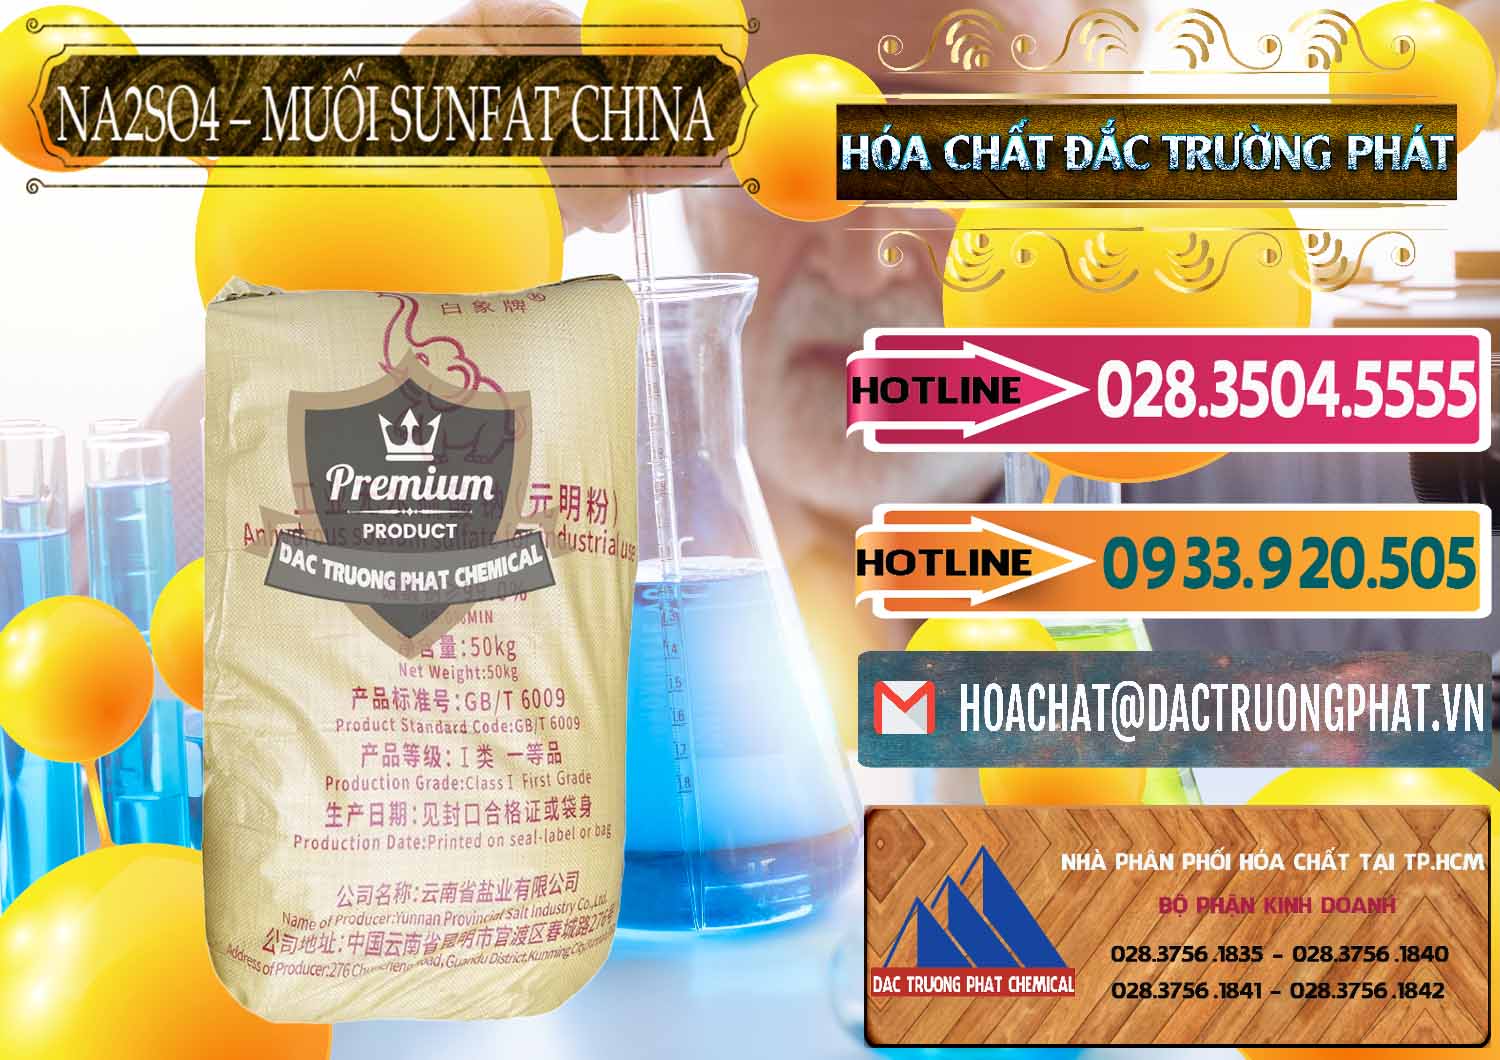 Nơi chuyên kinh doanh ( bán ) Sodium Sulphate - Muối Sunfat Na2SO4 Logo Con Voi Trung Quốc China - 0409 - Cty chuyên phân phối _ cung ứng hóa chất tại TP.HCM - dactruongphat.vn